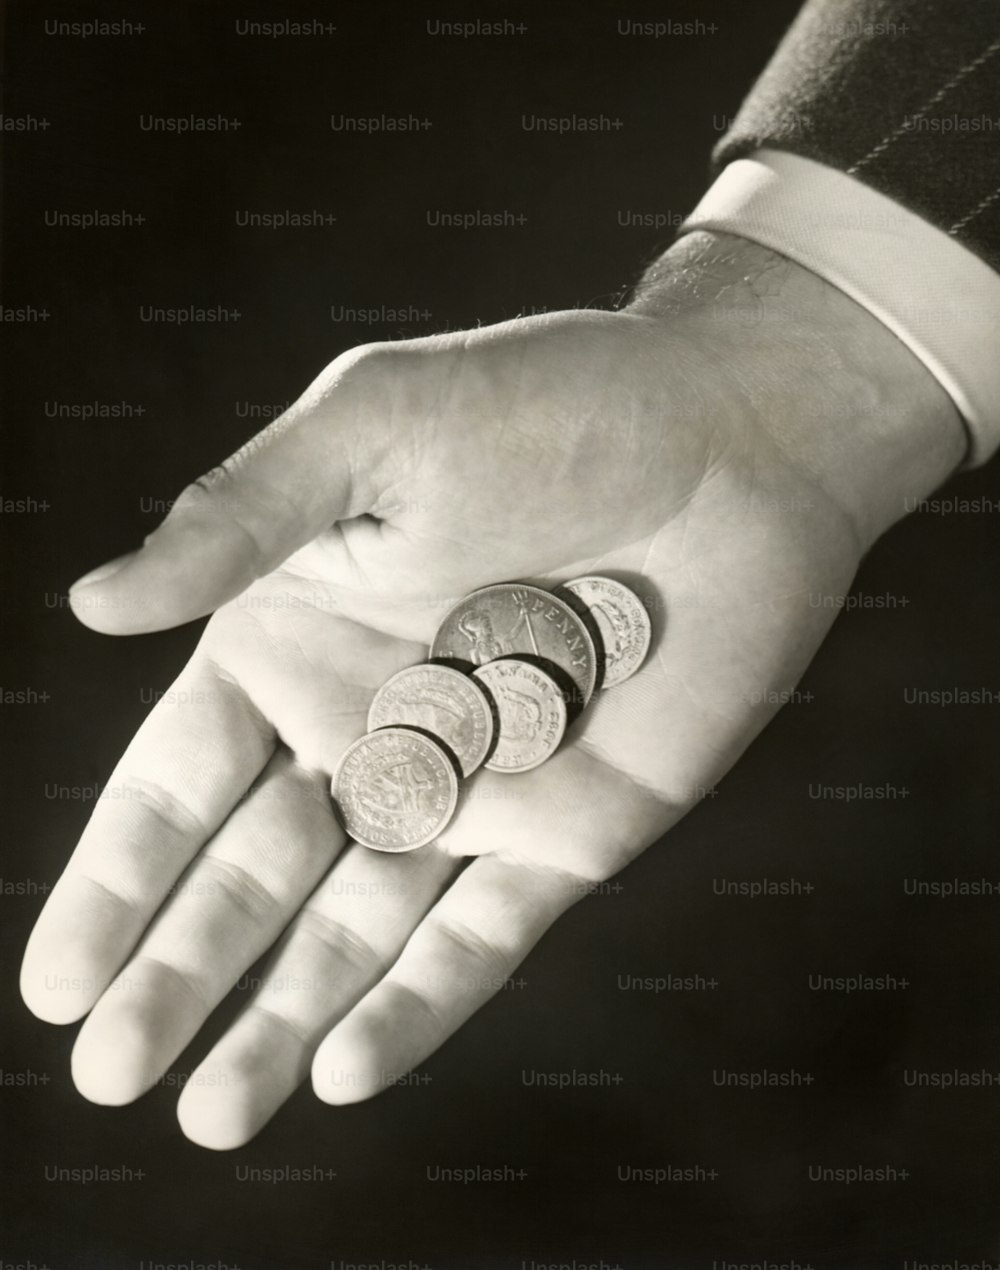 STATI UNITI - 1950 CIRCA: Monete in mano all'uomo.